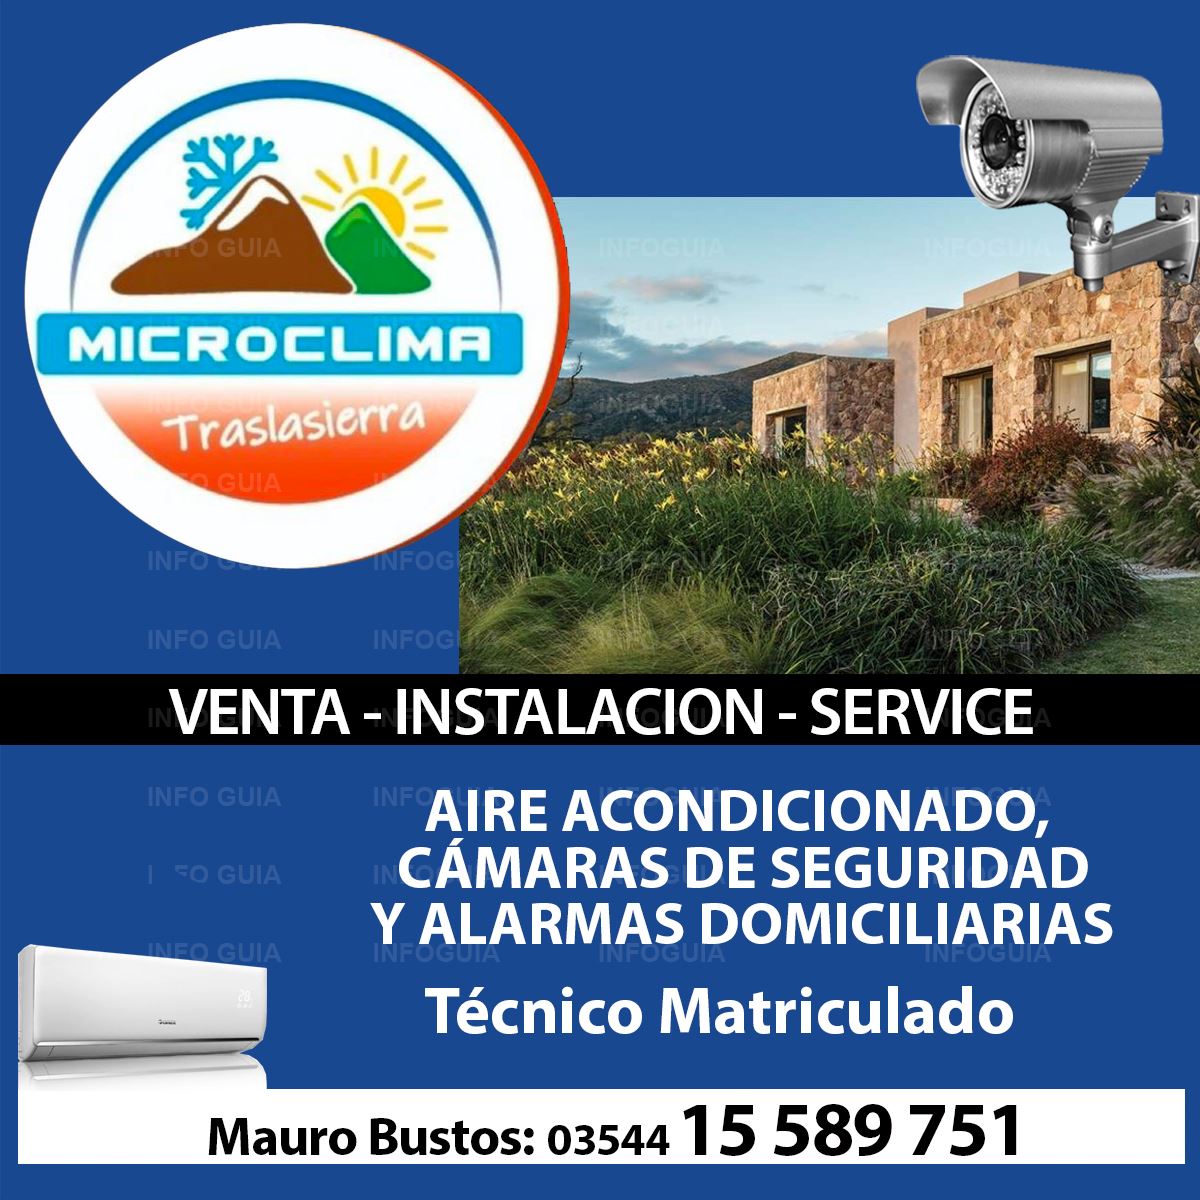 Instalación Alarmas y Cámaras Microclima - InfoGuia Traslasierra - Aire Acondicionado, Cámaras de Seguridad y Alarmas Domiciliarias.